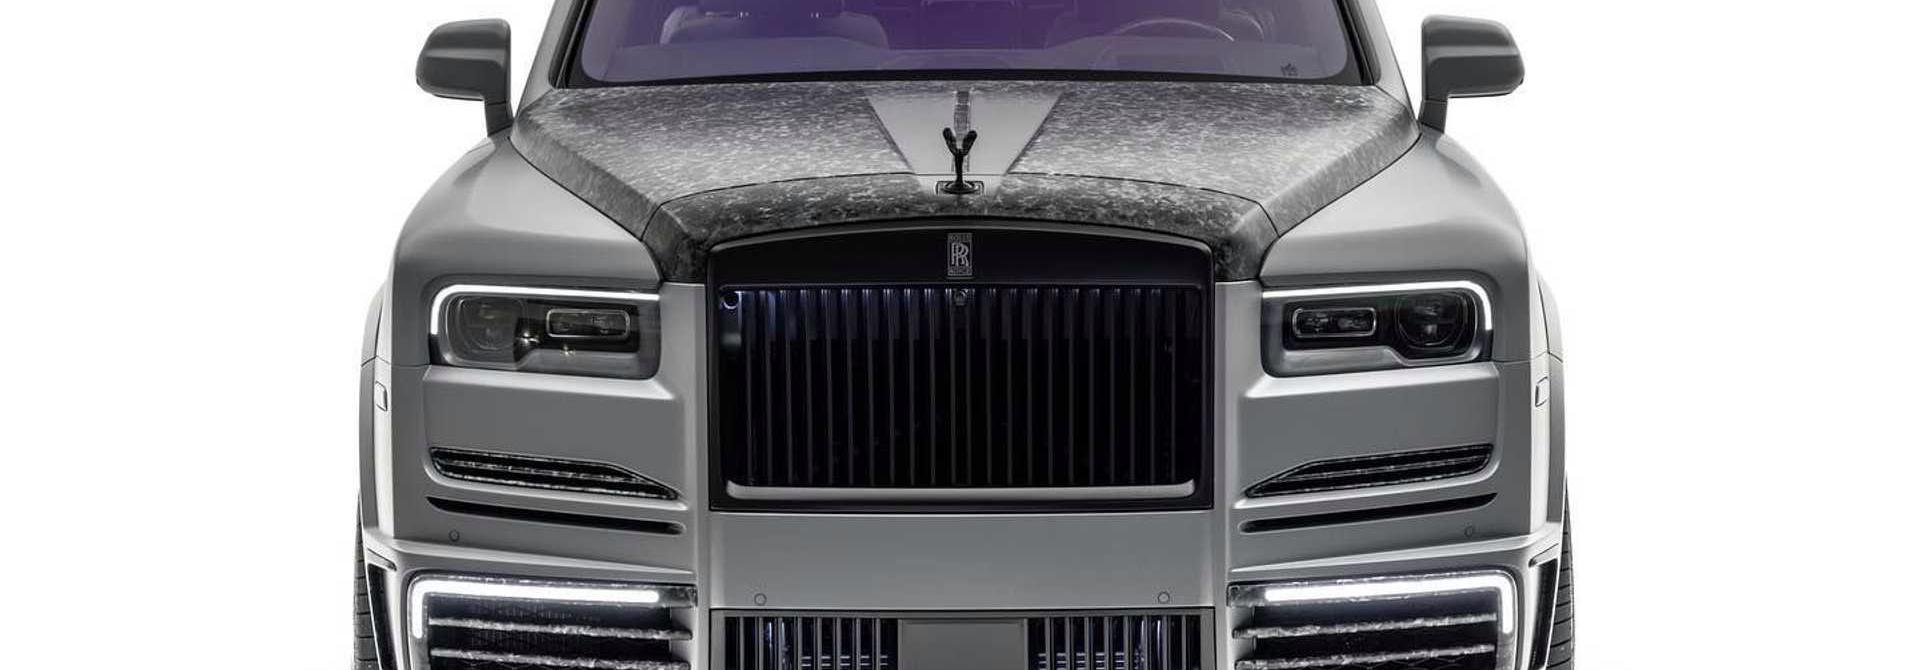 Mansory độ Rolls-Royce Cullinan dành cho giới siêu giàu UAE